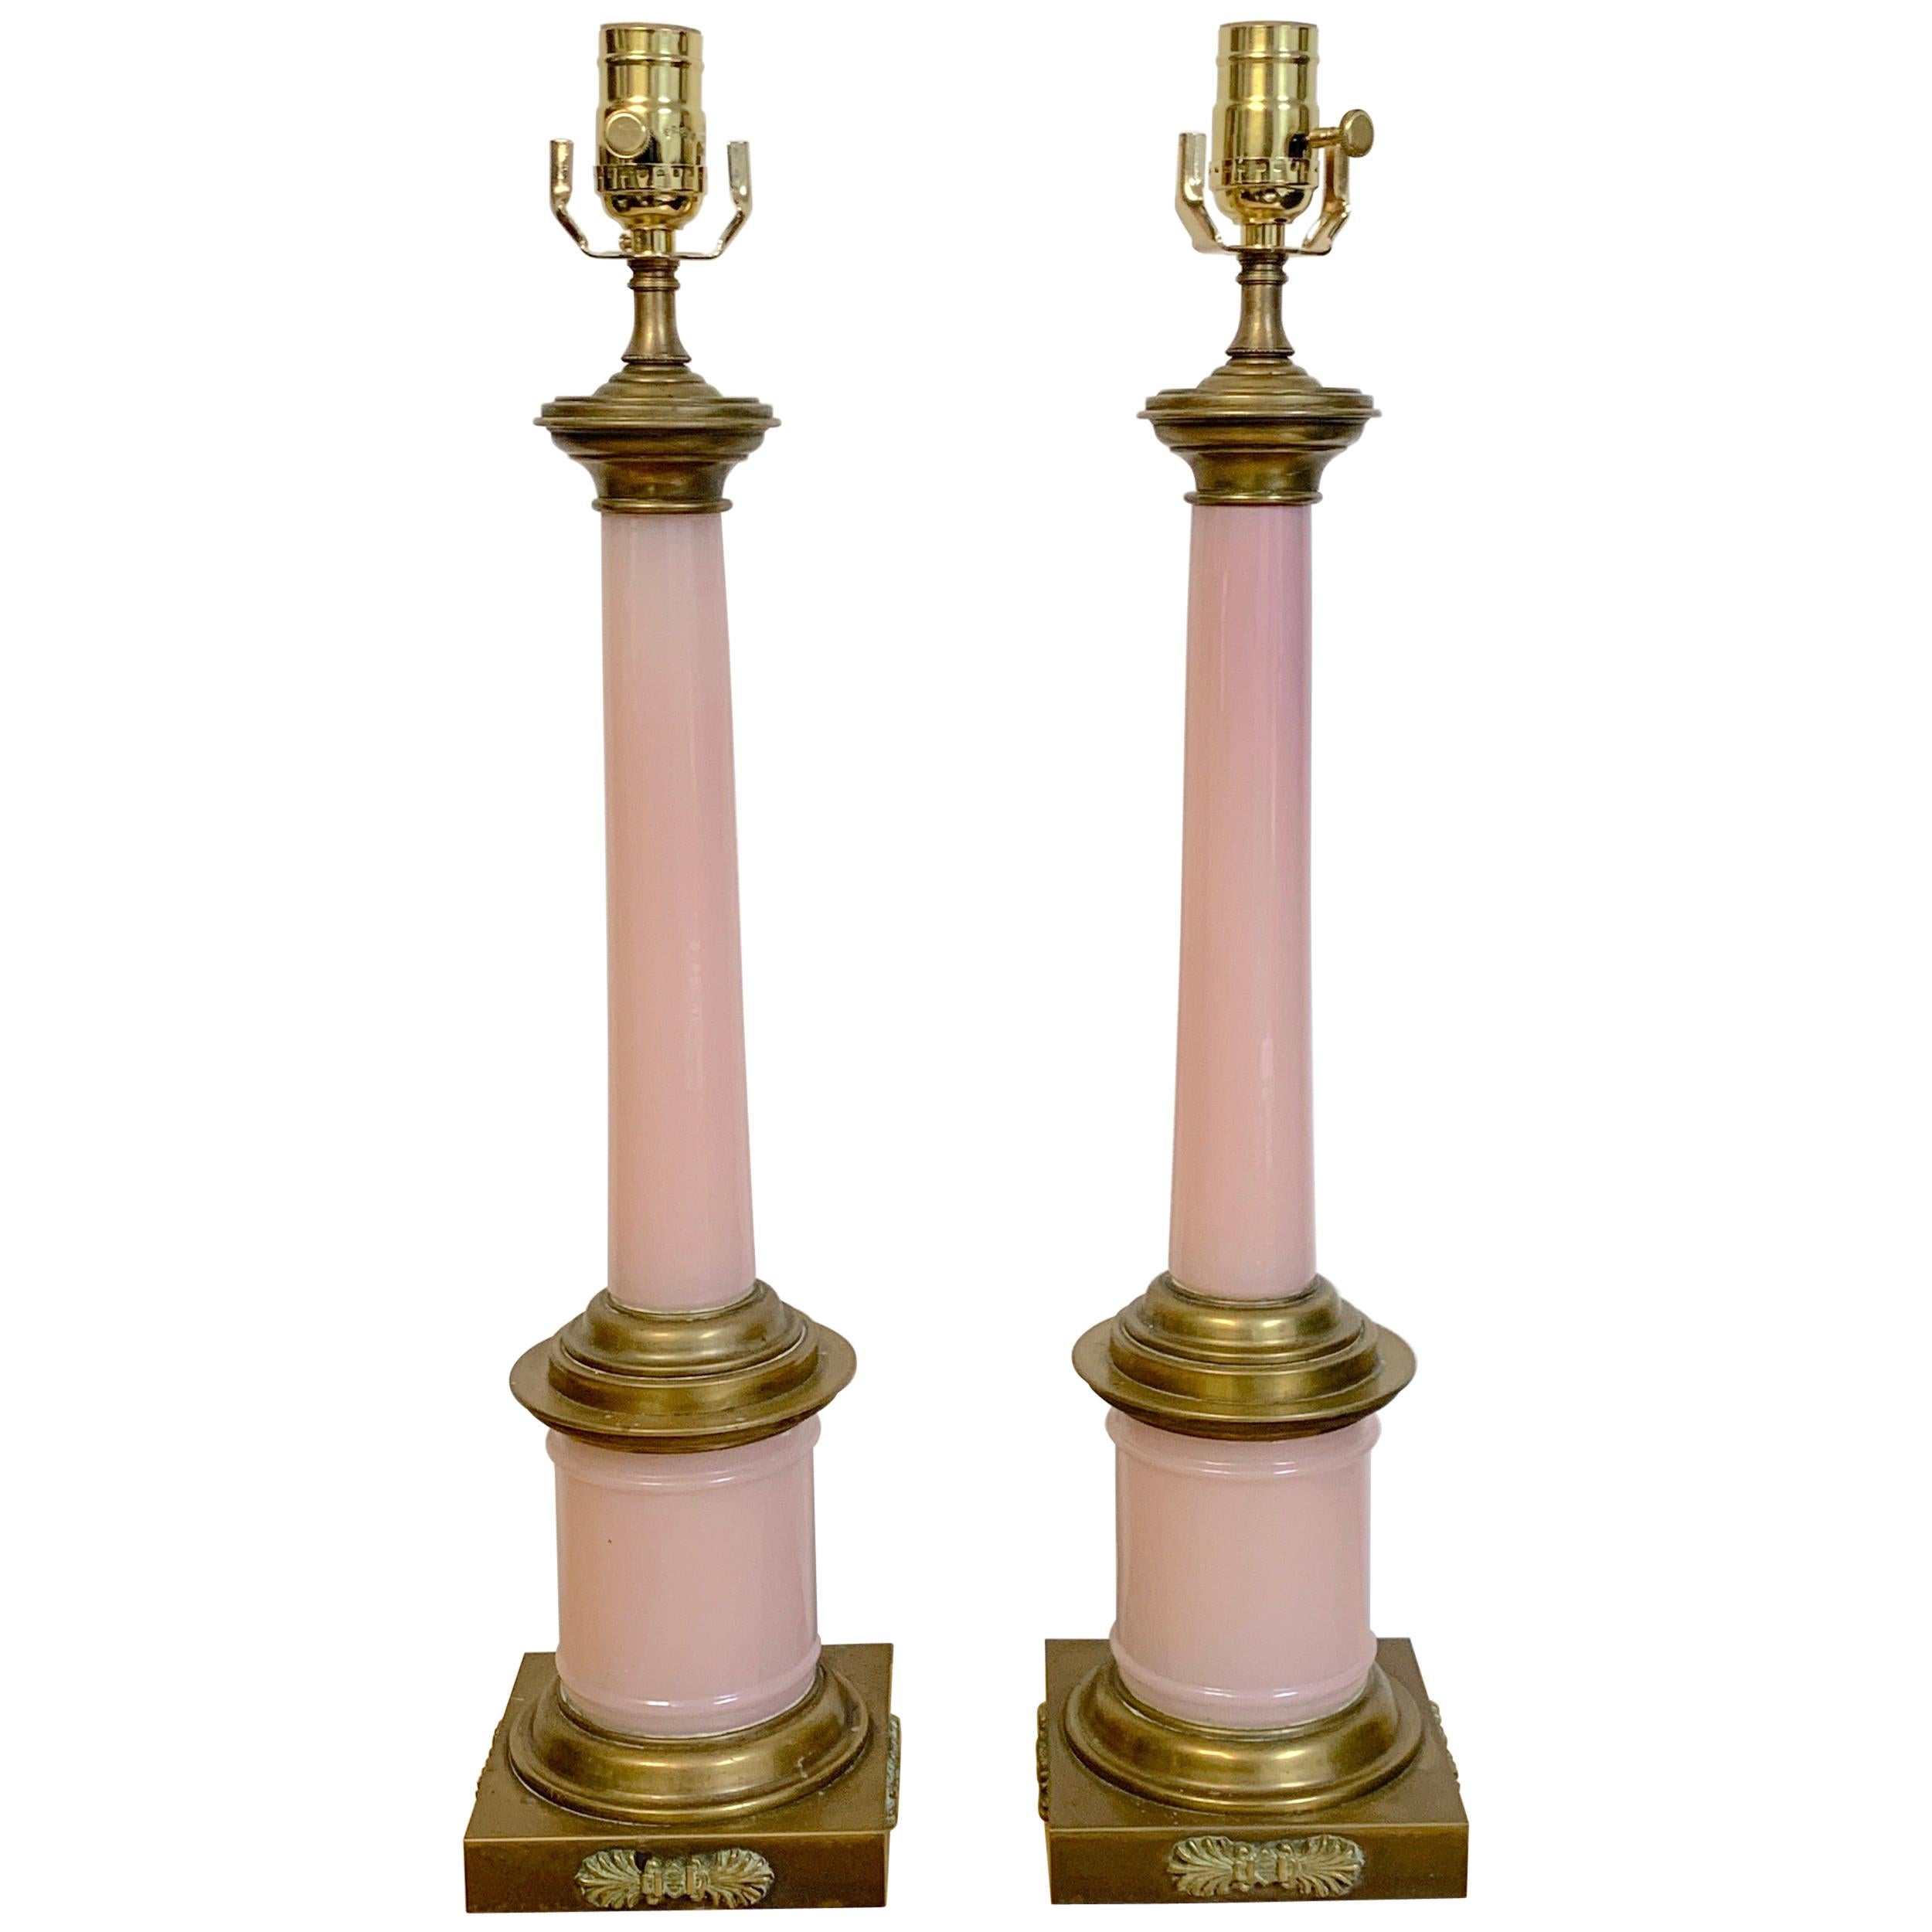 Paire de lampes néoclassiques françaises en bronze rose opalin, chacune de forme typique avec des bases montées d'acanthes.
La base est carrée de 5,5 pouces, 19 pouces de haut jusqu'au sommet de la colonne, 24 pouces de haut jusqu'au sommet de la